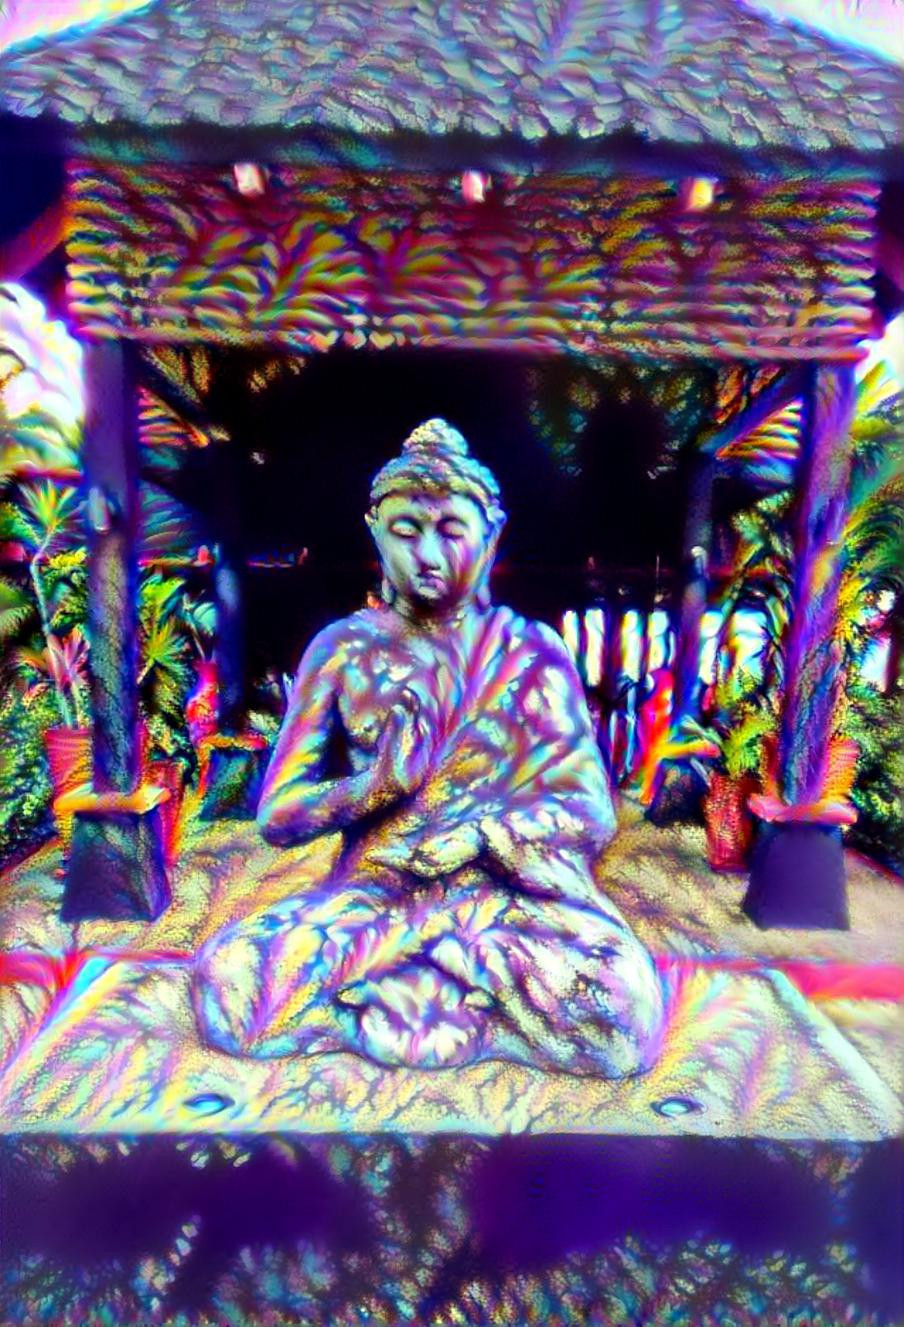 Budha from Bali